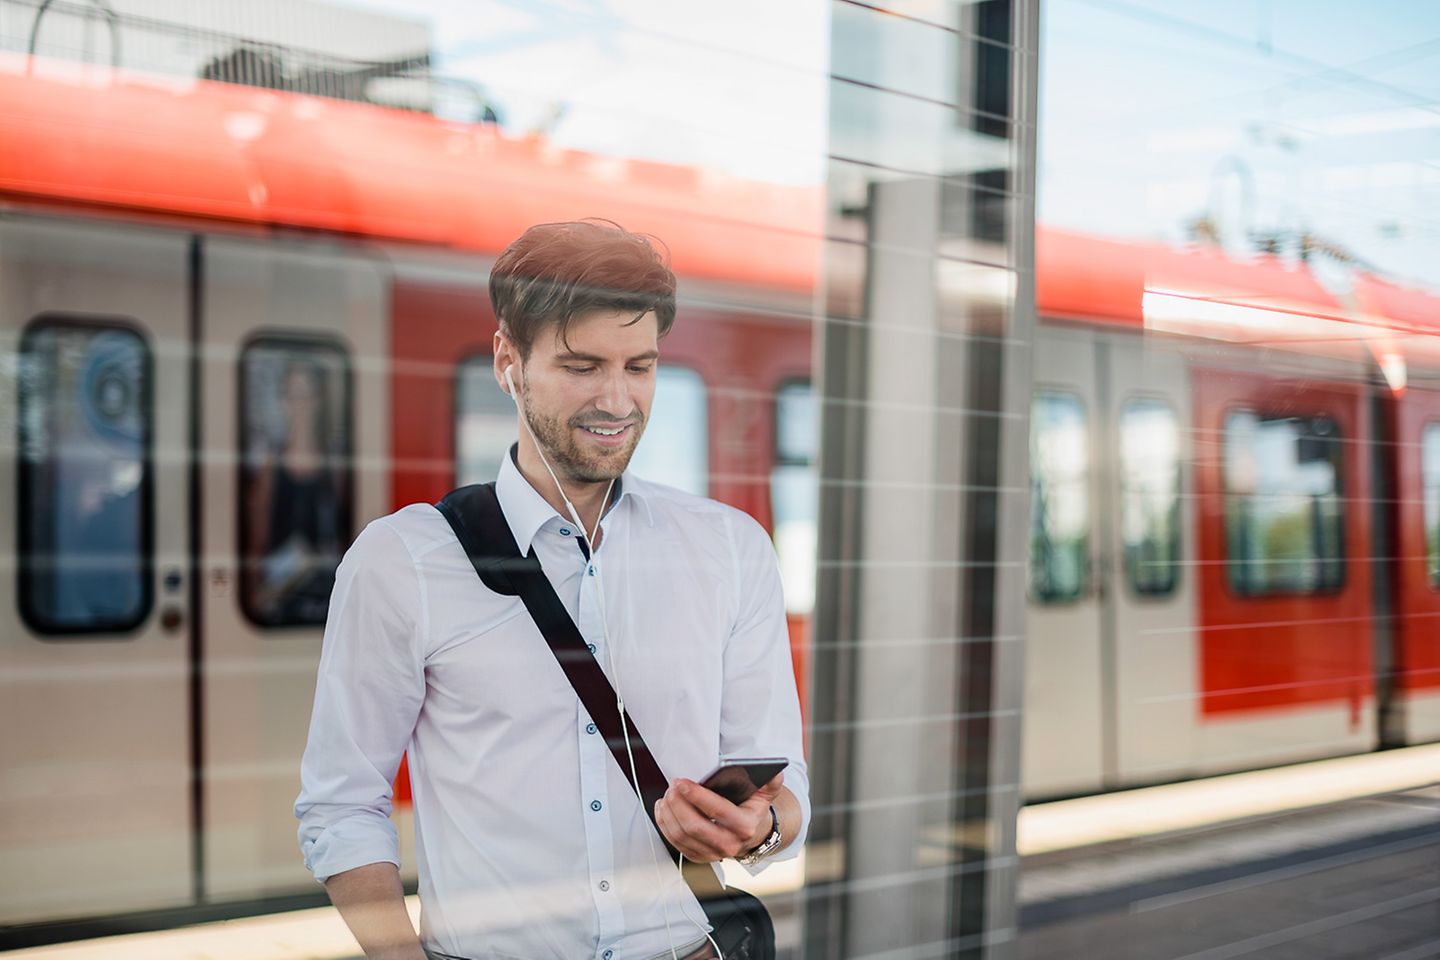 Hombre de pie en un andén mirando sonriente su smartphone. Detrás hay un tren regional.